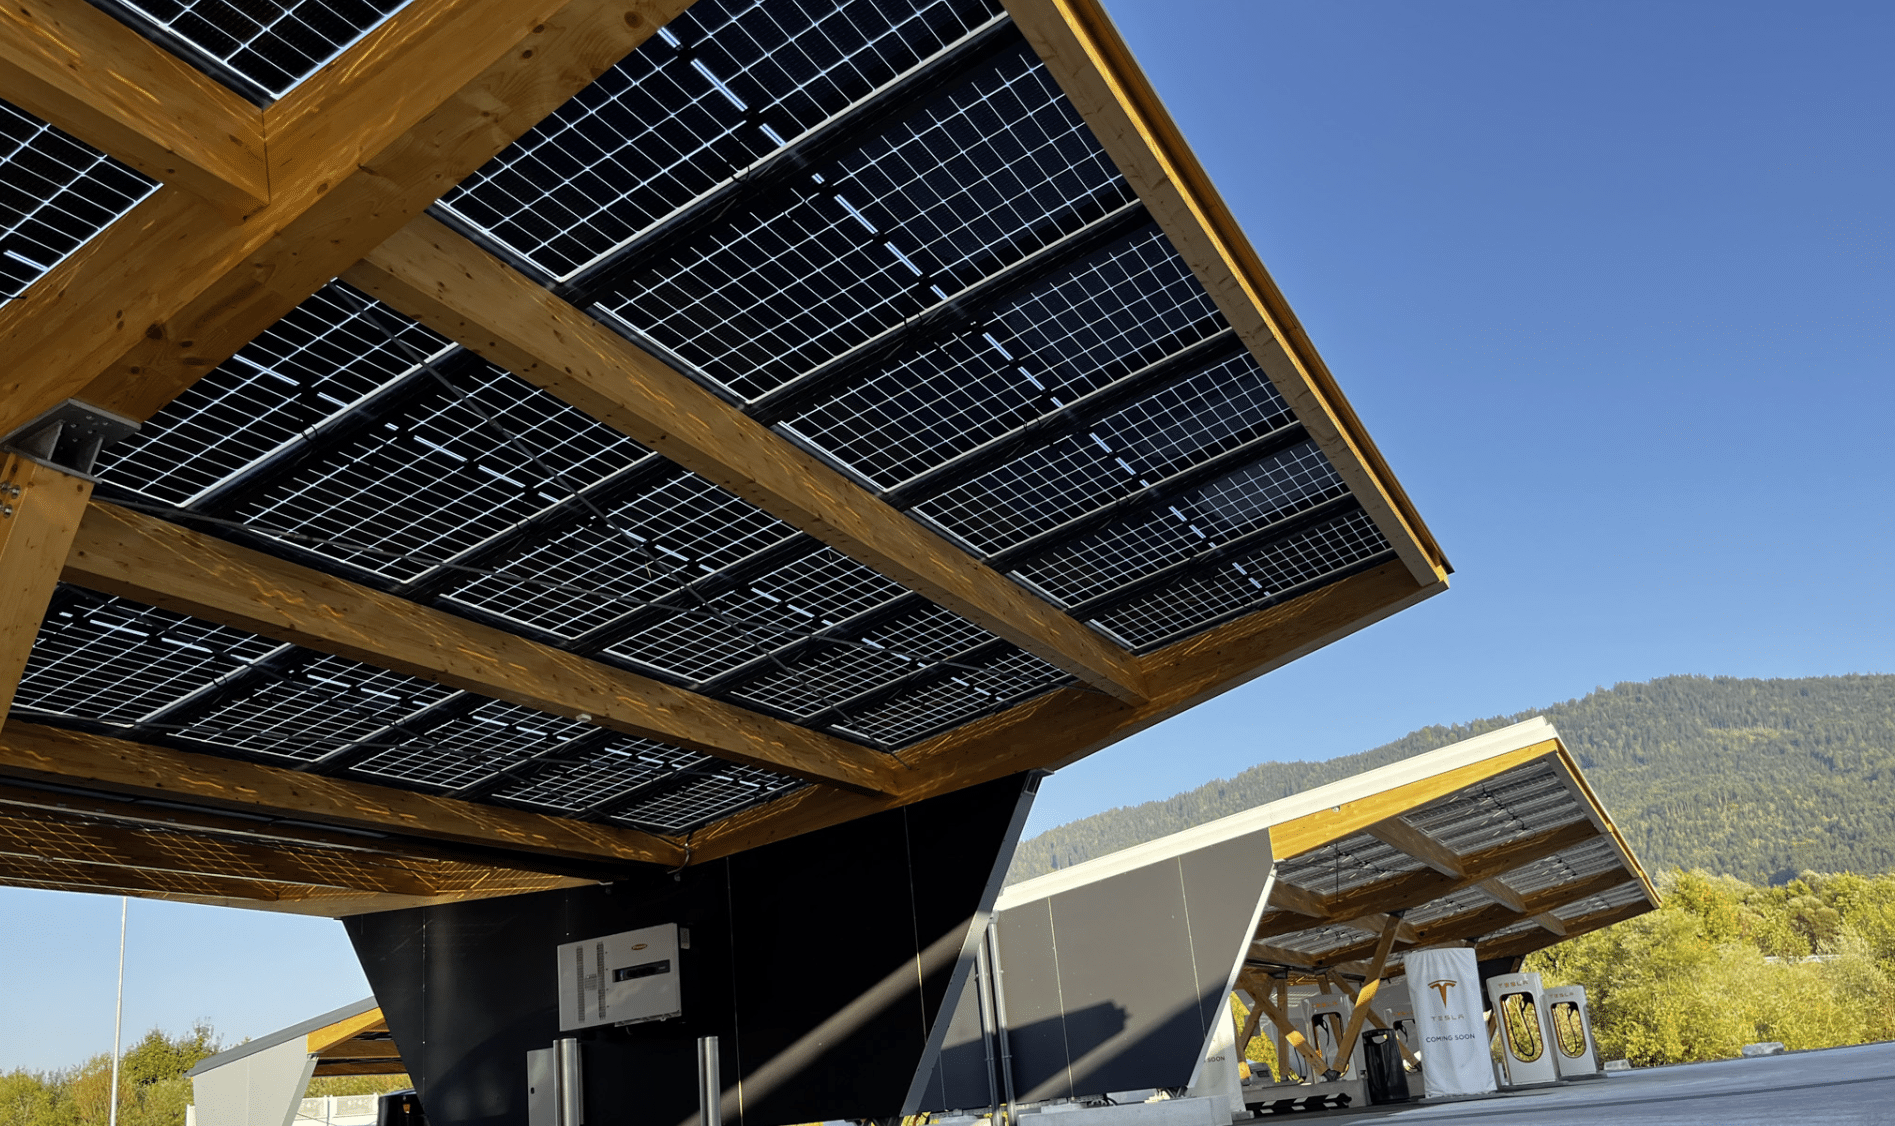 SONNENKRAFT zeigt eine Photovoltaikanlage, welche als Dach auf einem Carport dient undLadeboxen für E-Autos.